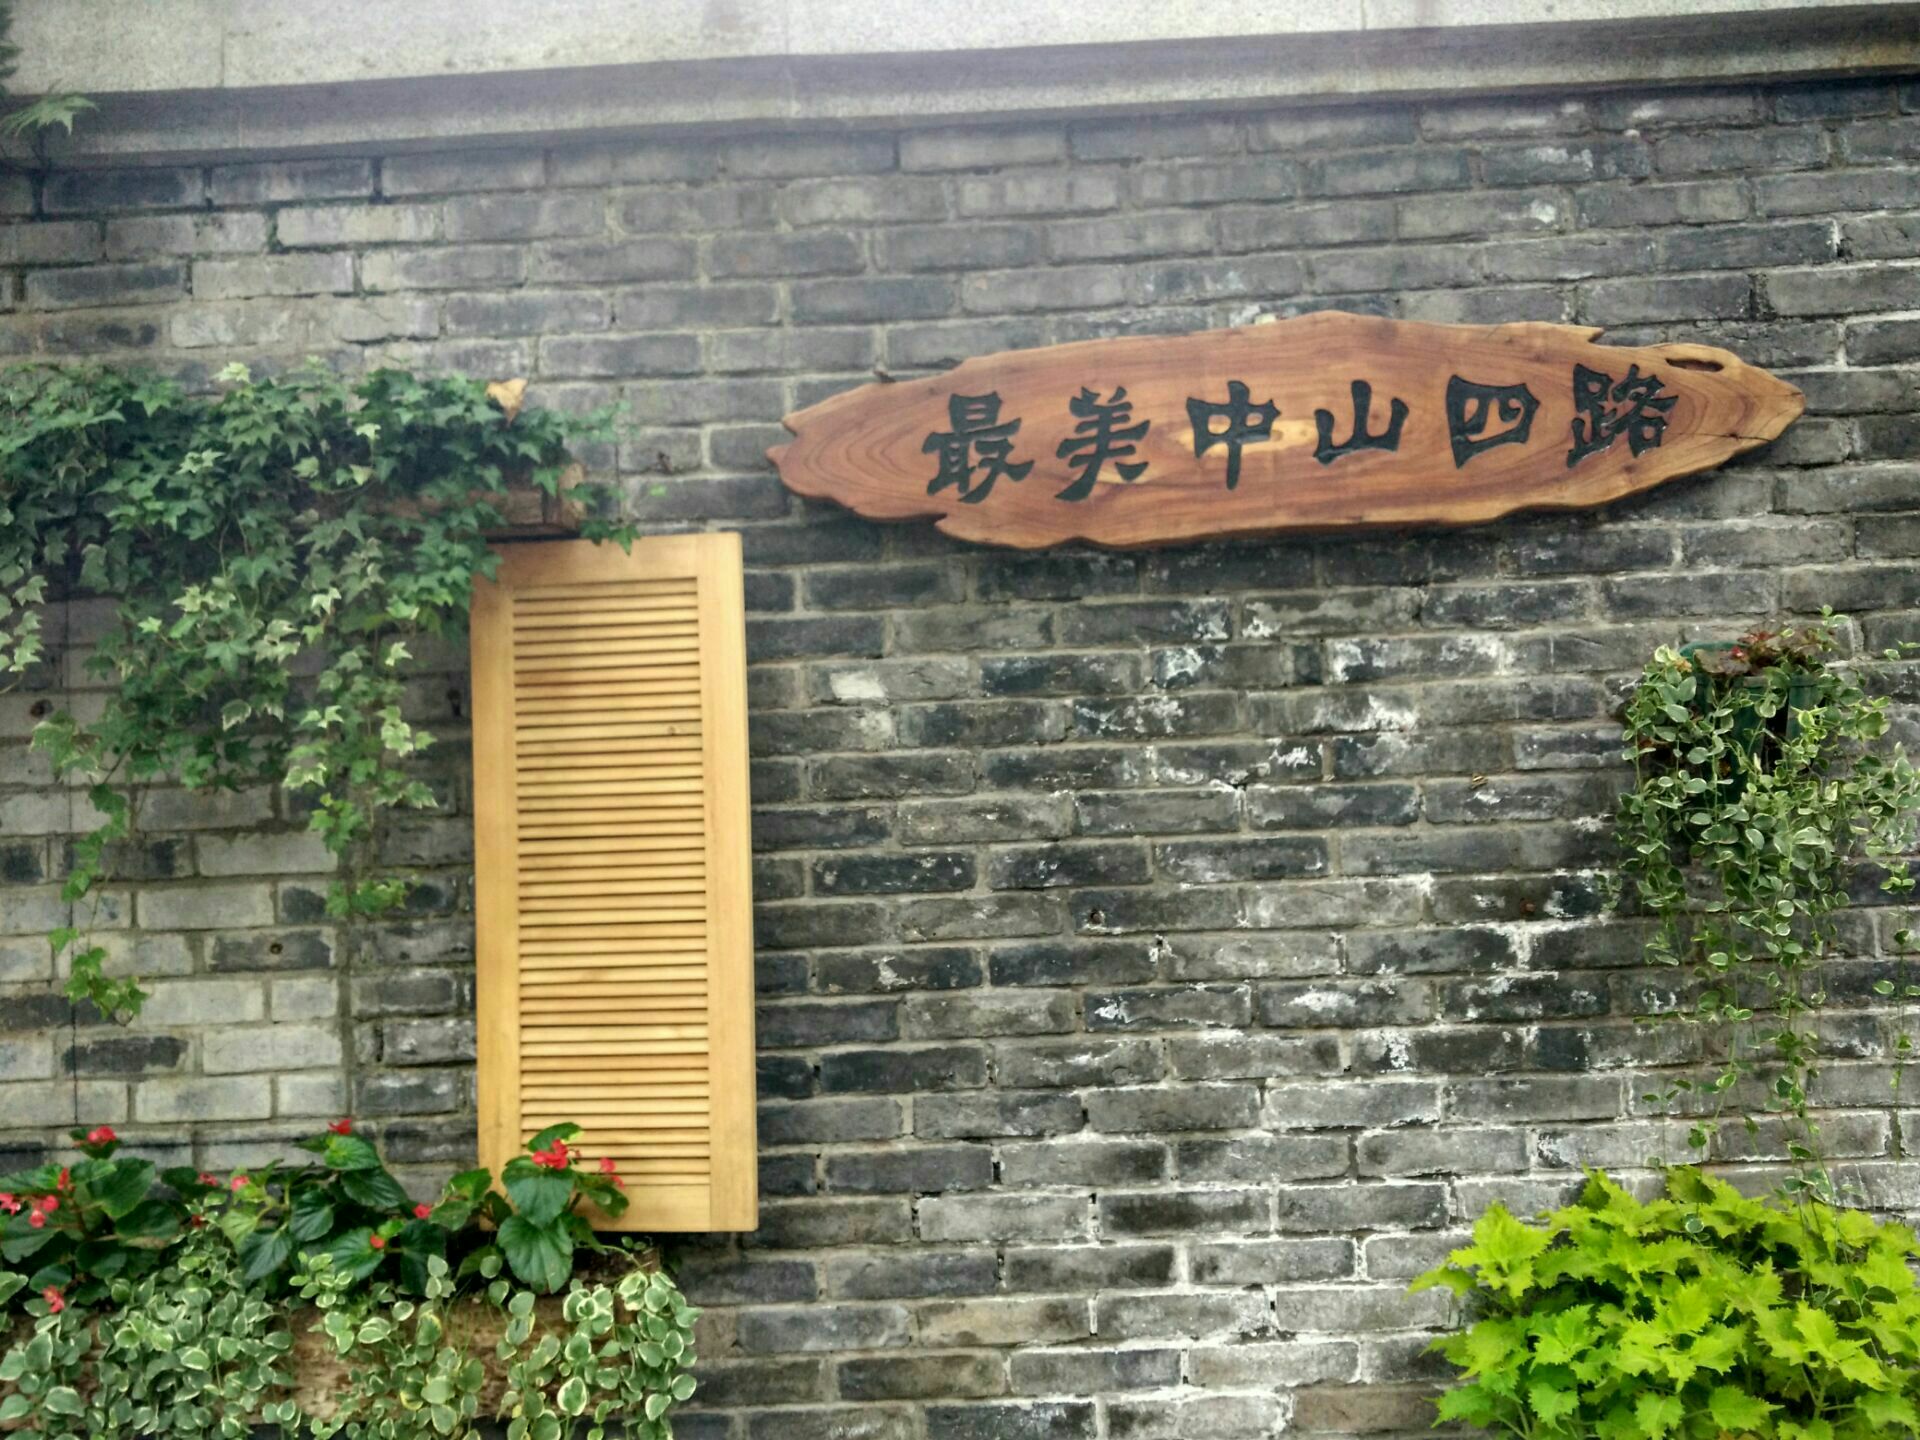 【携程攻略】重庆桂园景点,重庆谈判旧址之一，重庆市委所在地~